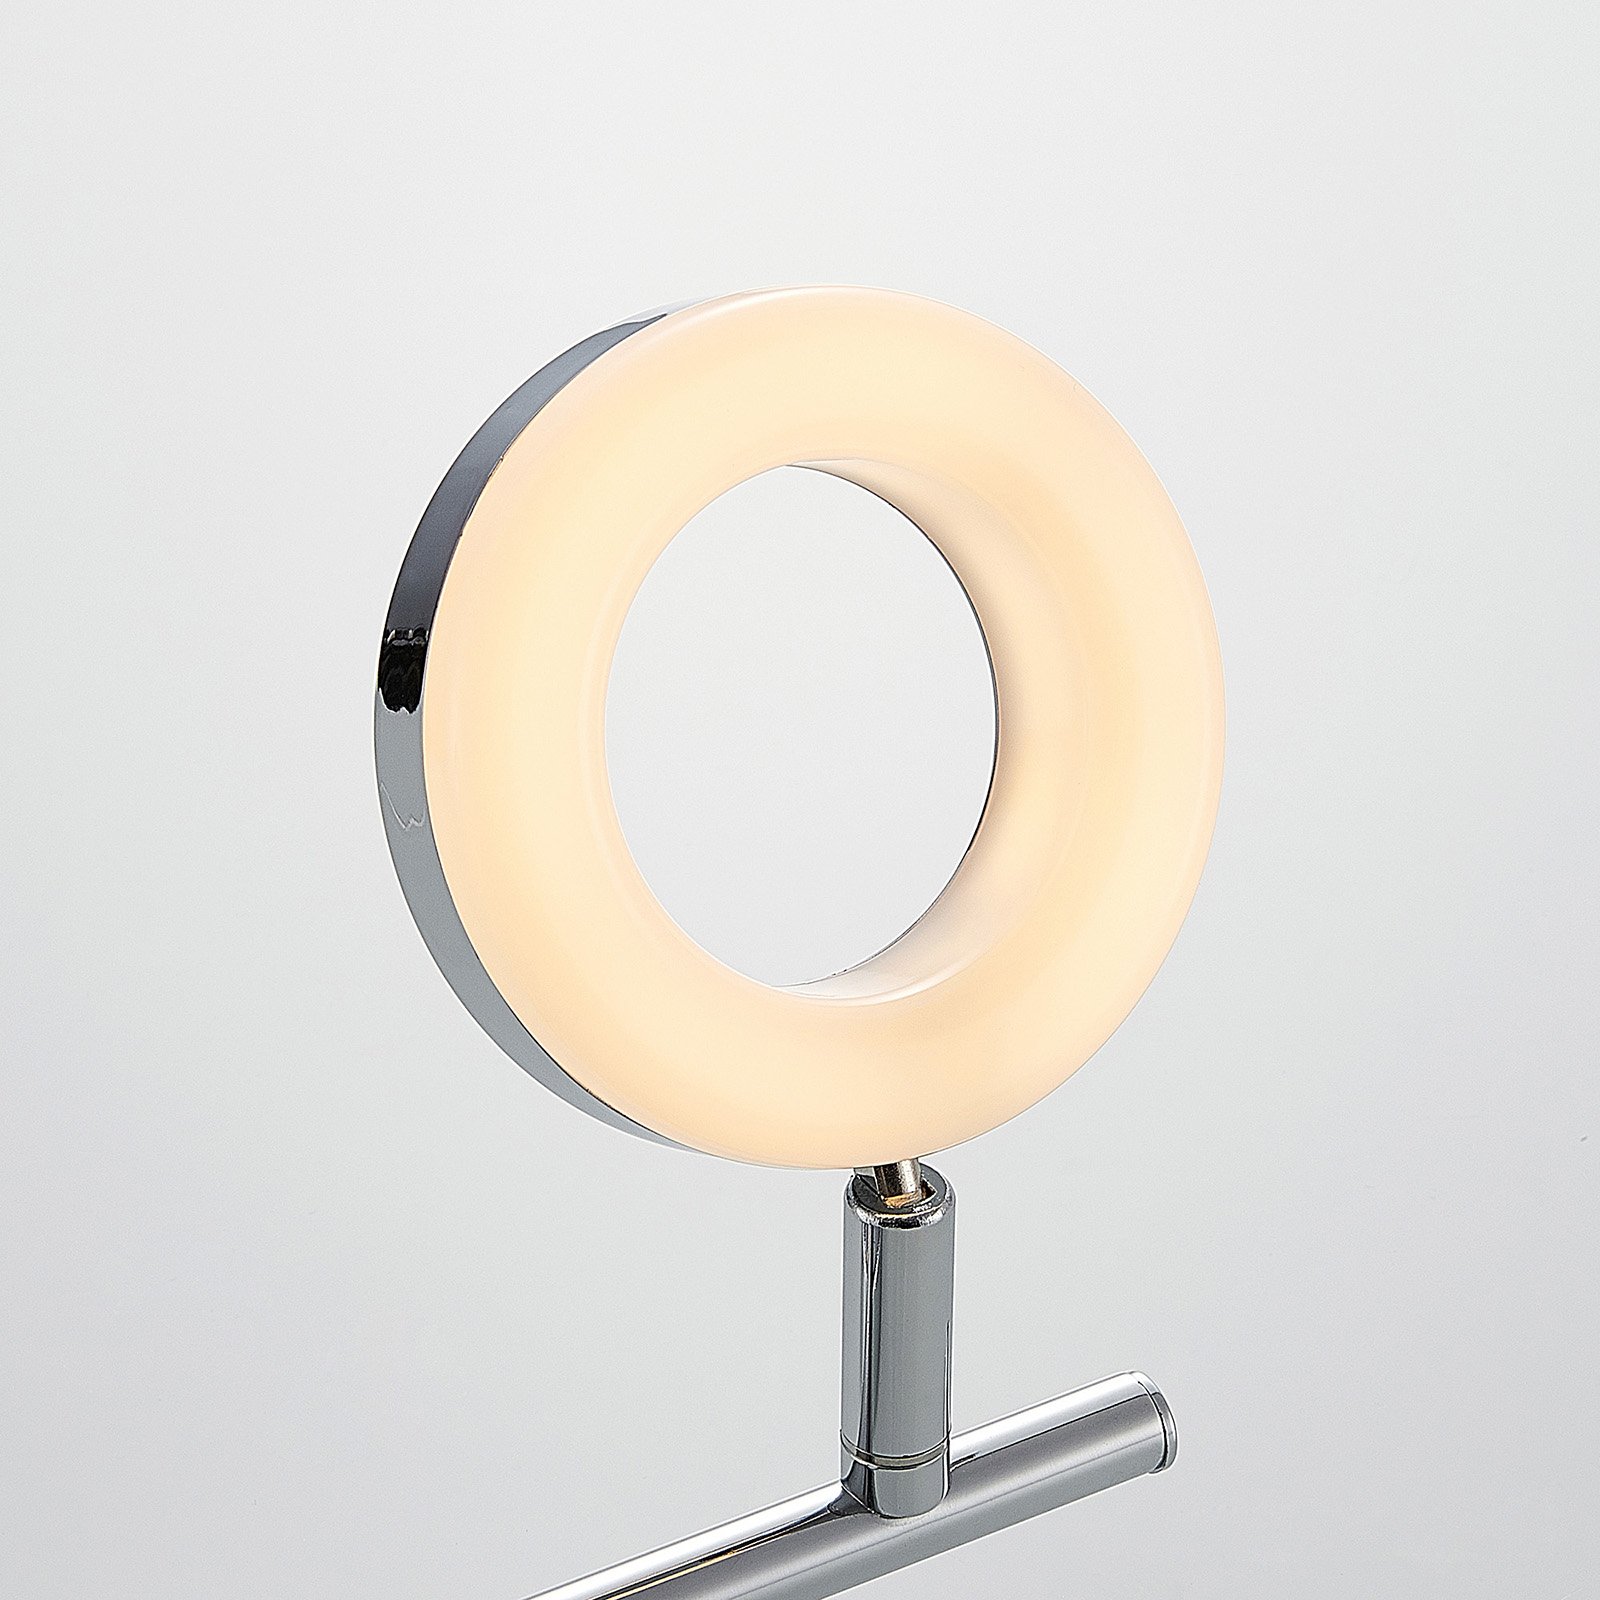 ELC Tioklia LED-loftlampe, krom, 2 lyskilder